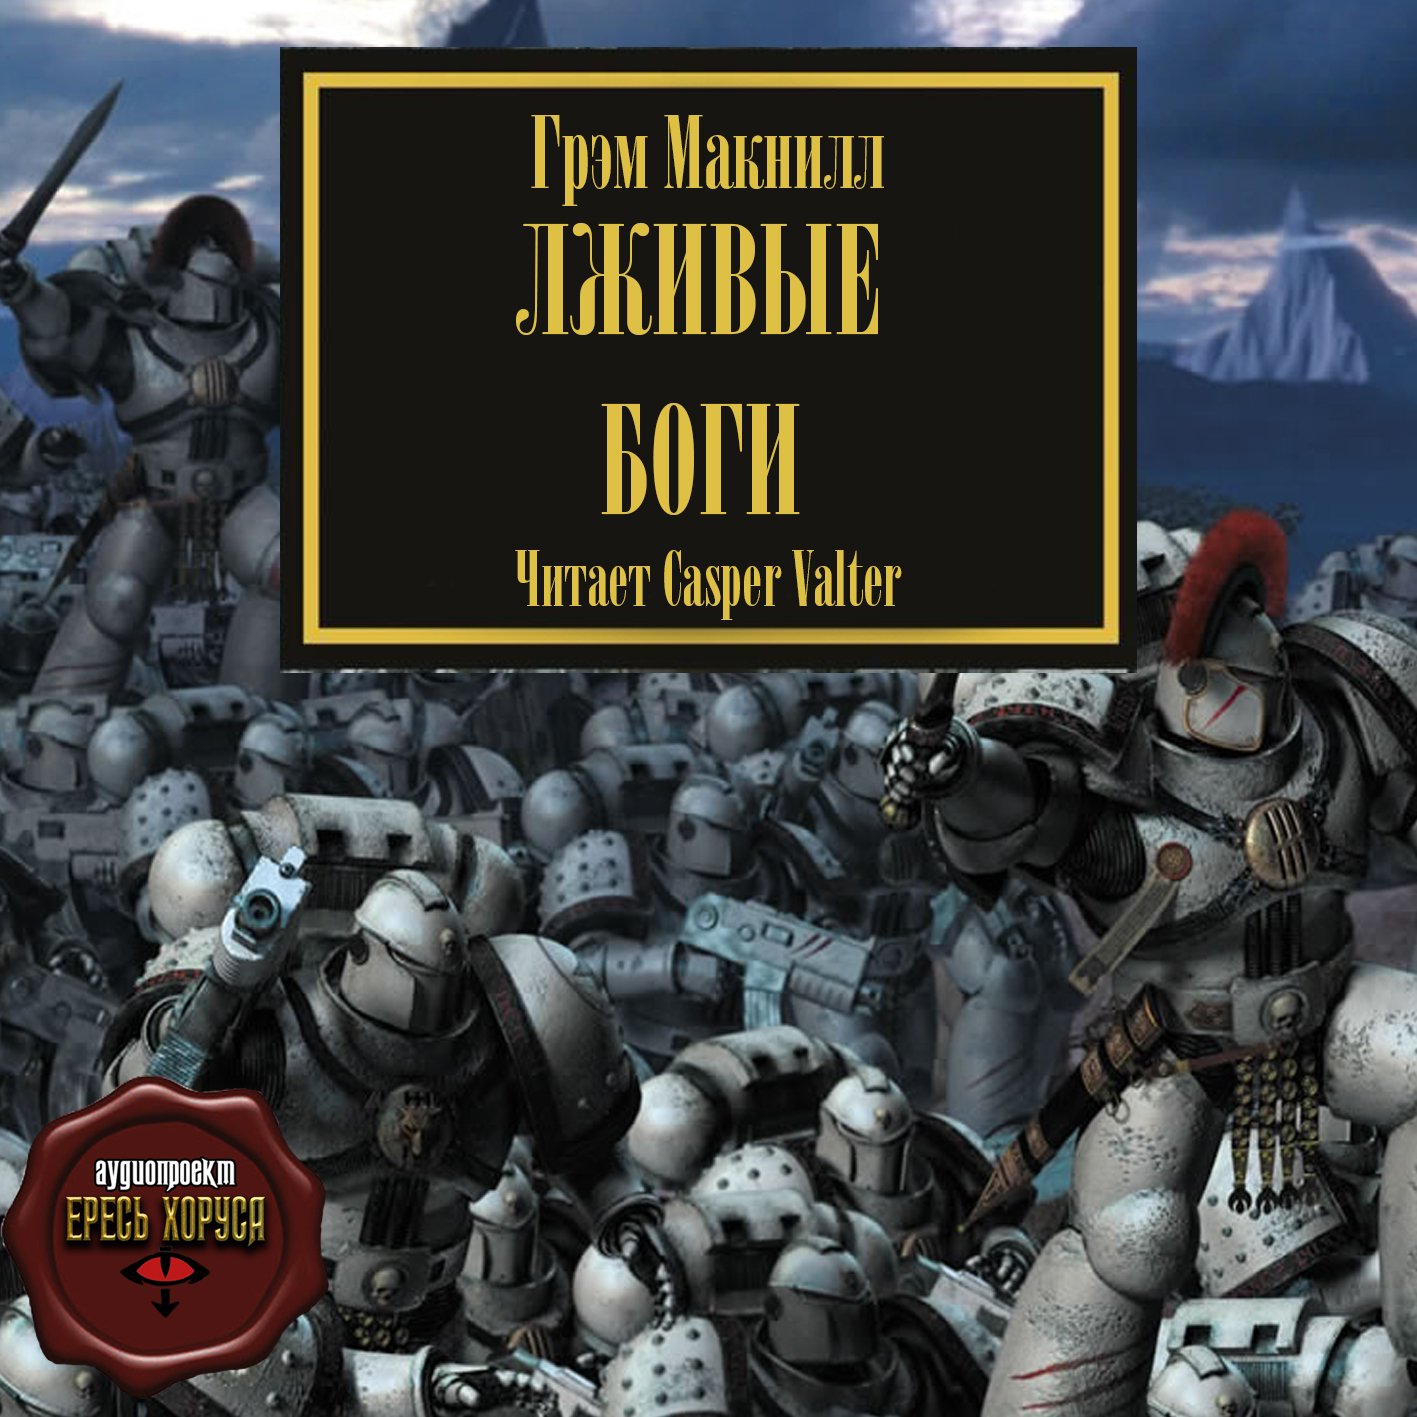 Макнилл Грэм - Warhammer 40000, цикл "Ересь Хоруса". Книга 2 - "Лживые боги"